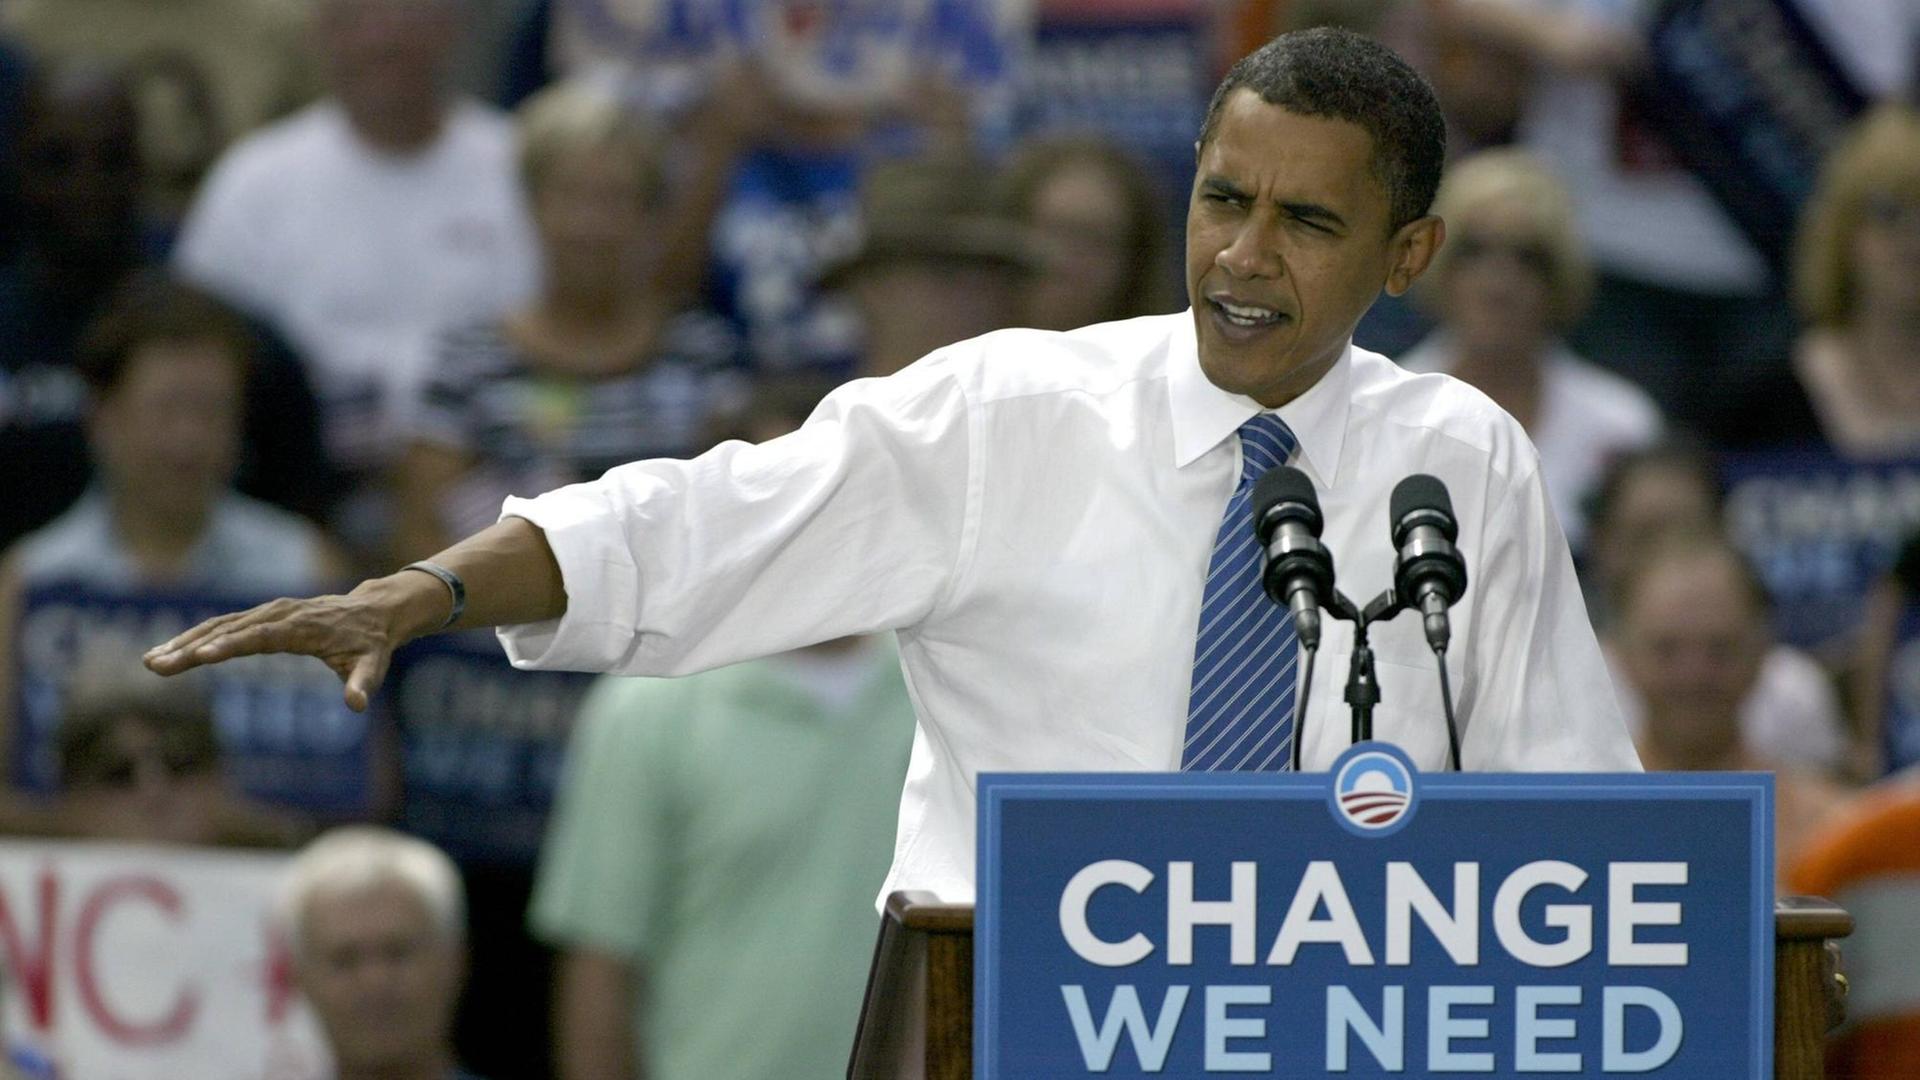 Barack Obama als Präsidentschaftskandidat auf einer Veranstaltung 2008 in Charlotte.